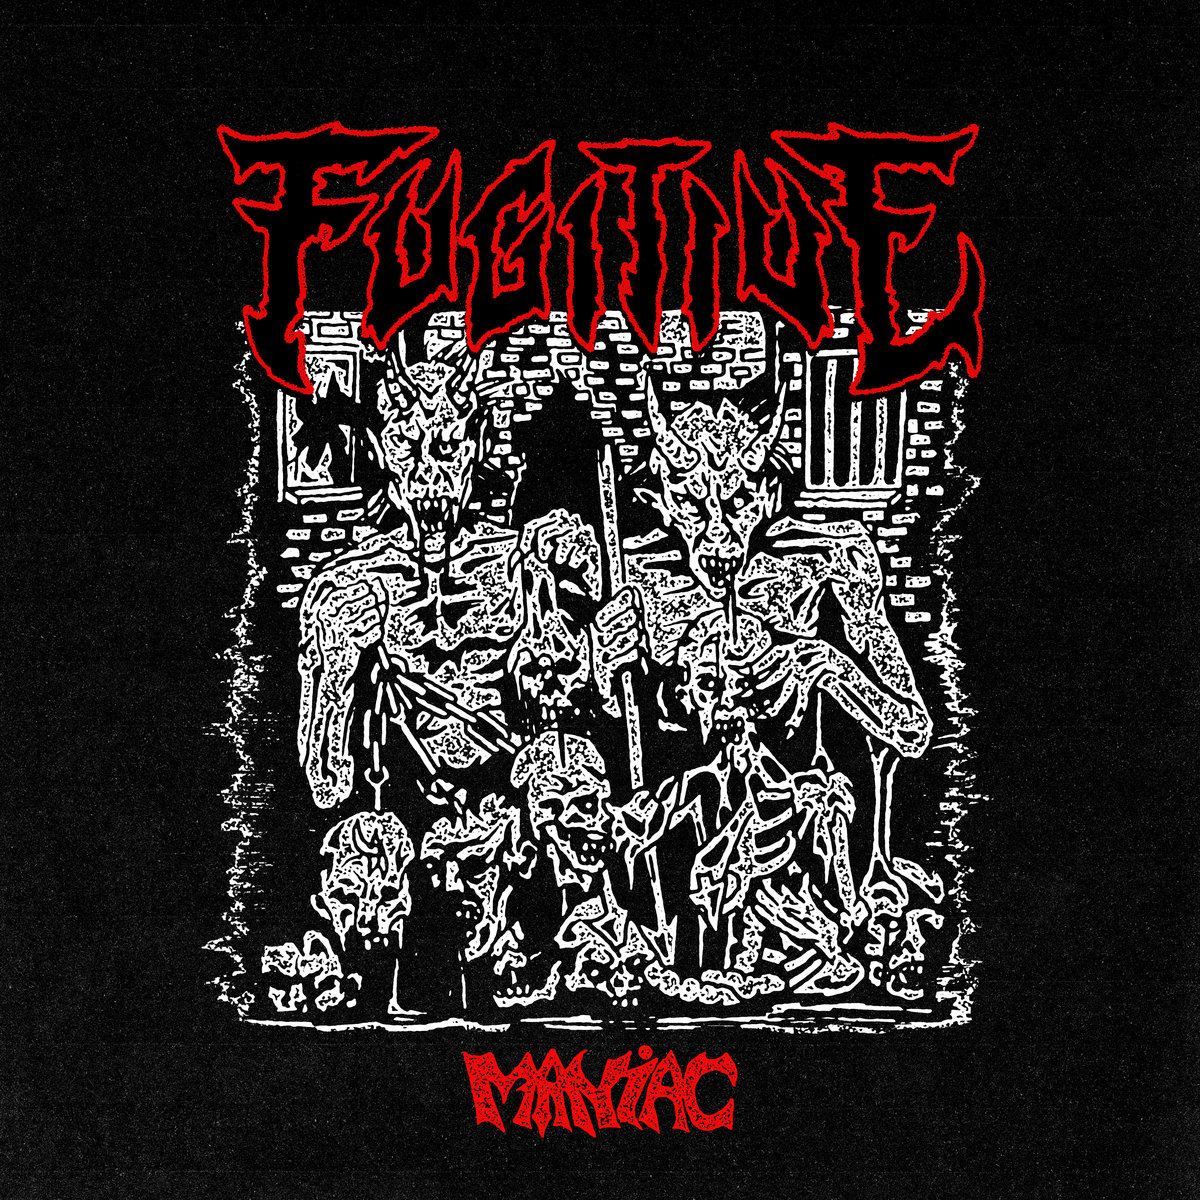 Fugitive - "Maniac" EP - 2022